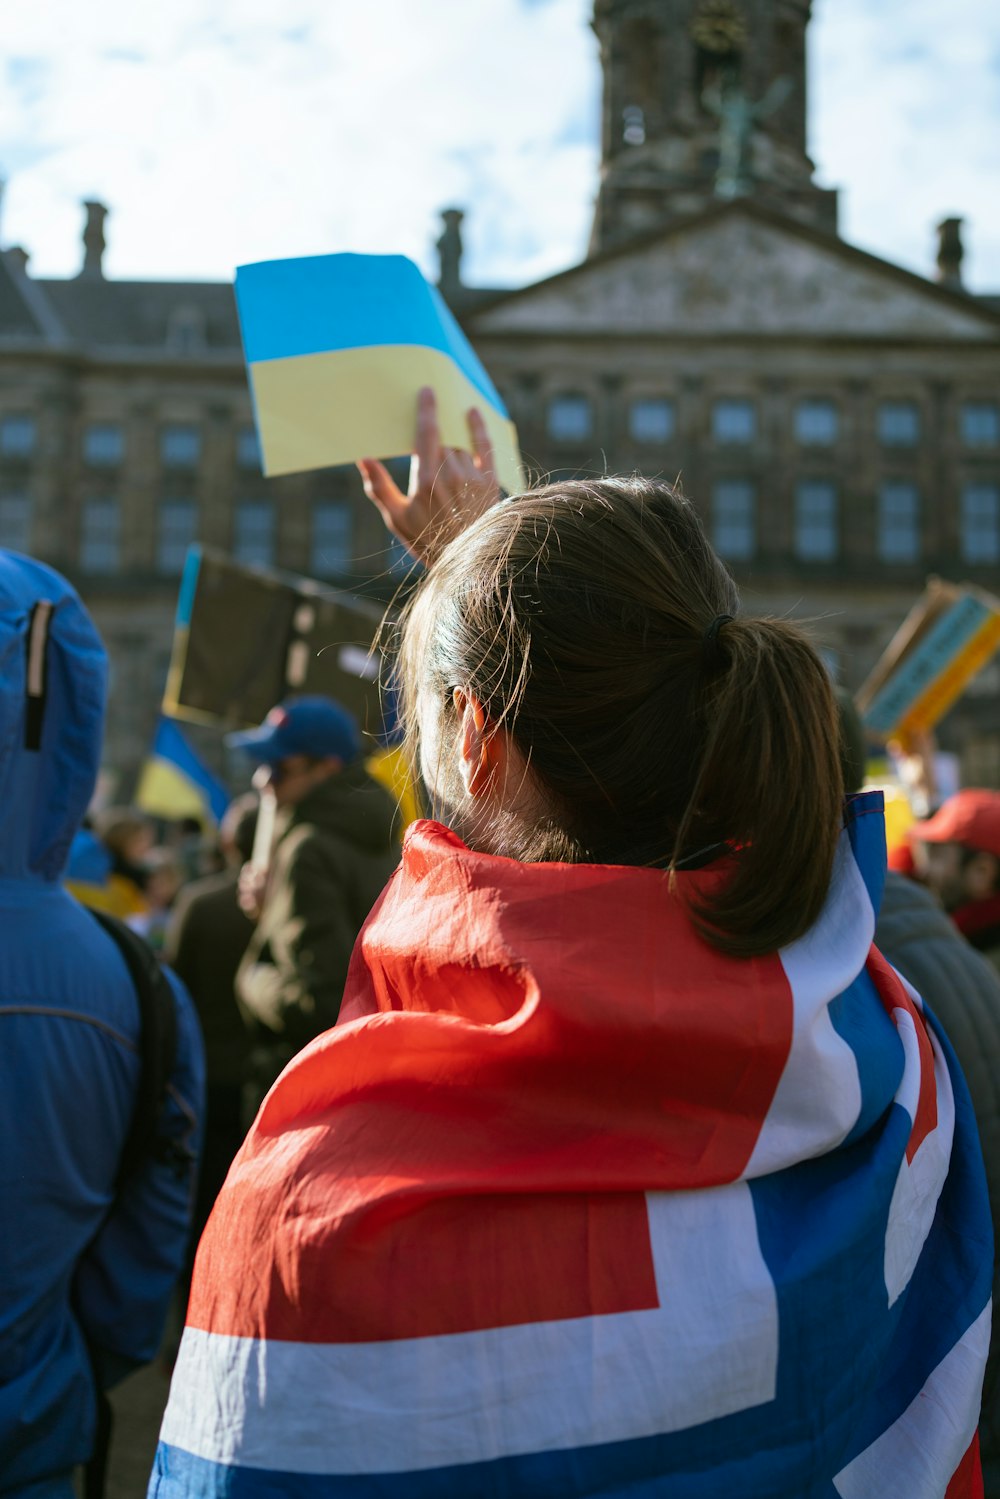 Foto Una mujer con chaqueta roja, blanca azul sostiene una – Imagen Países bajos en Unsplash